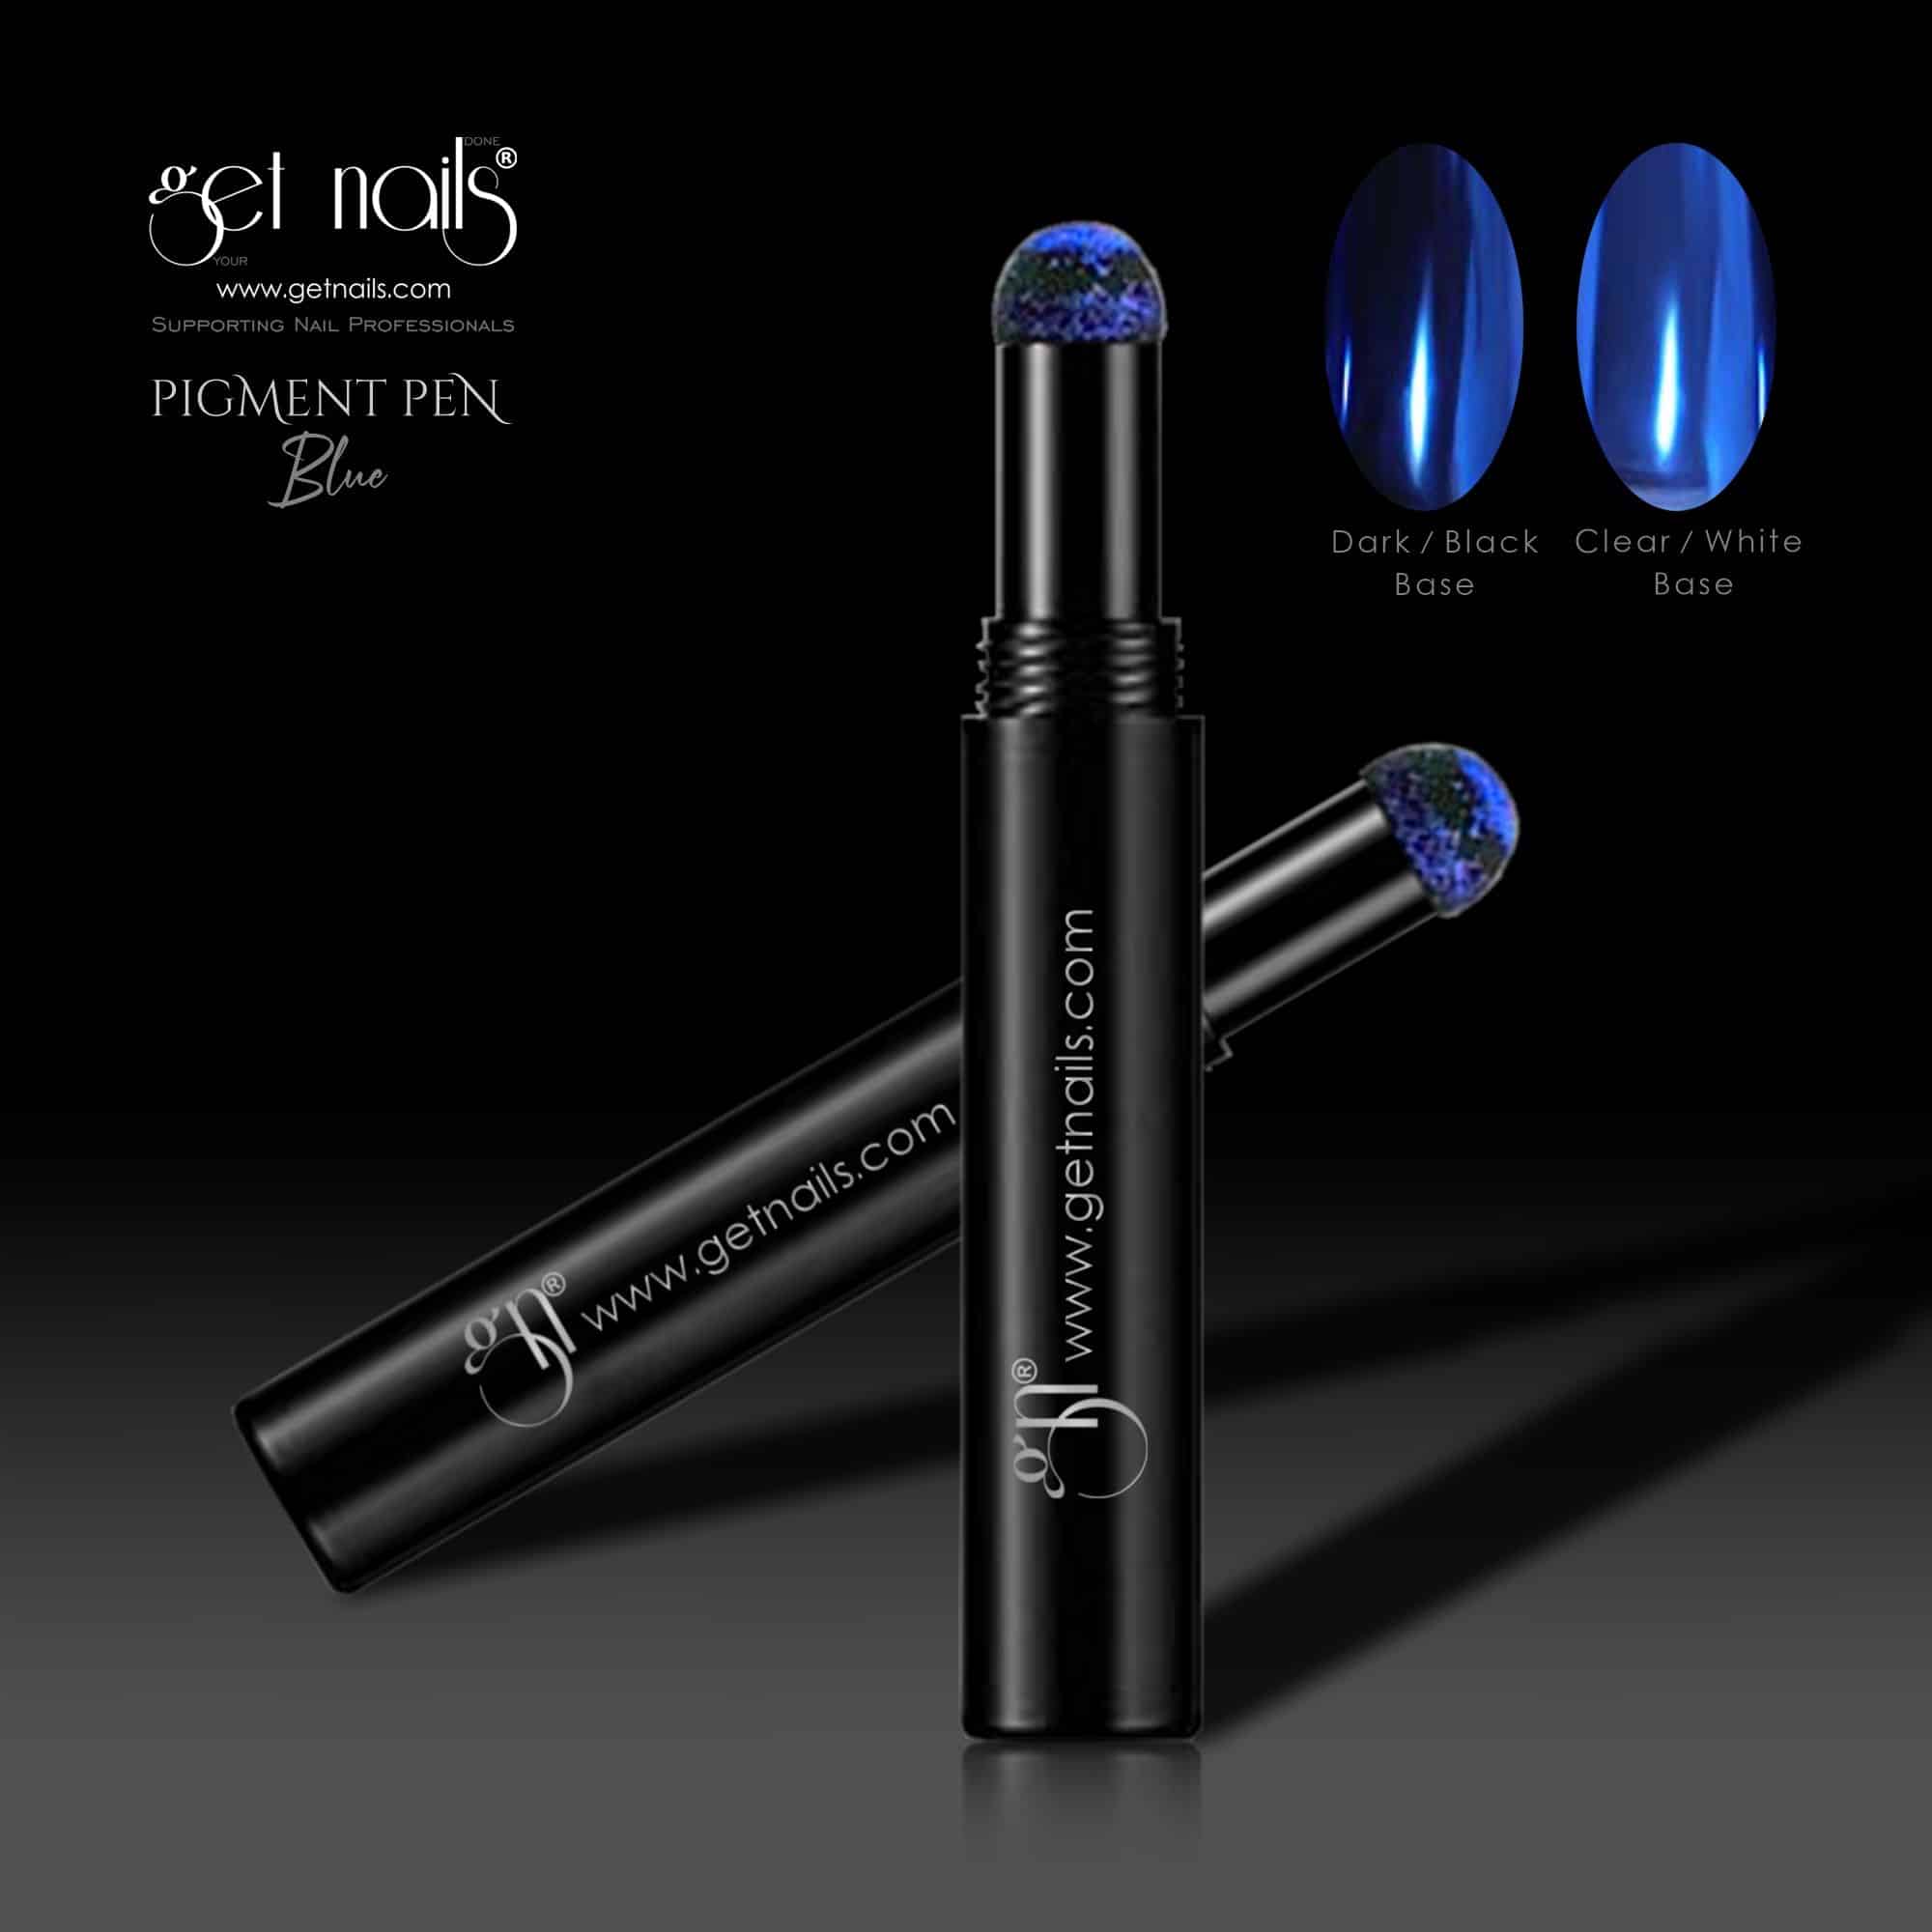 Get Nails Austria - Pigment Pen Blau Chrome